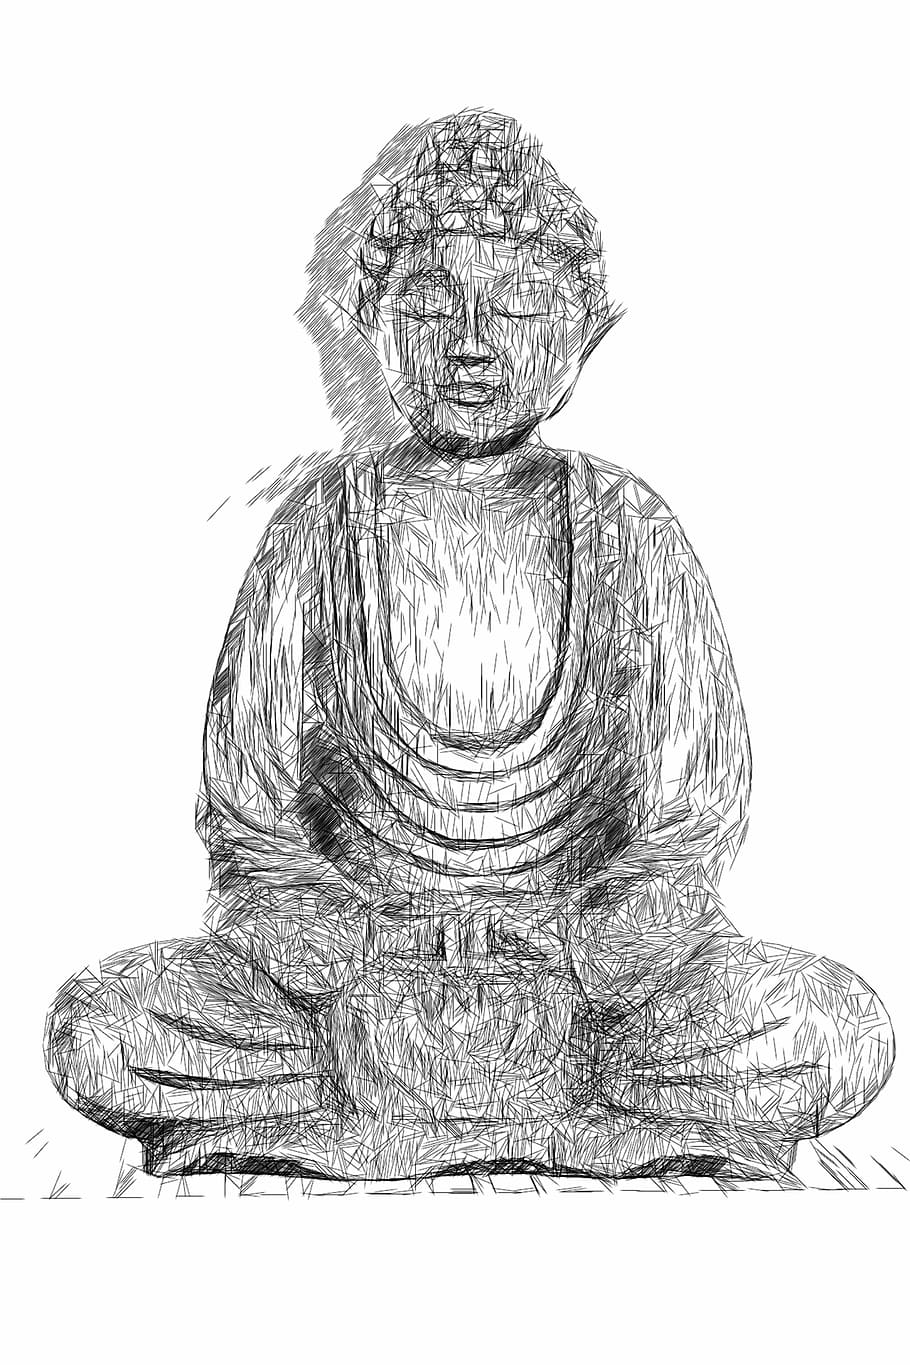 buda, budismo, estatua, religión, asia, espiritual, meditación, creer, figura, meditar